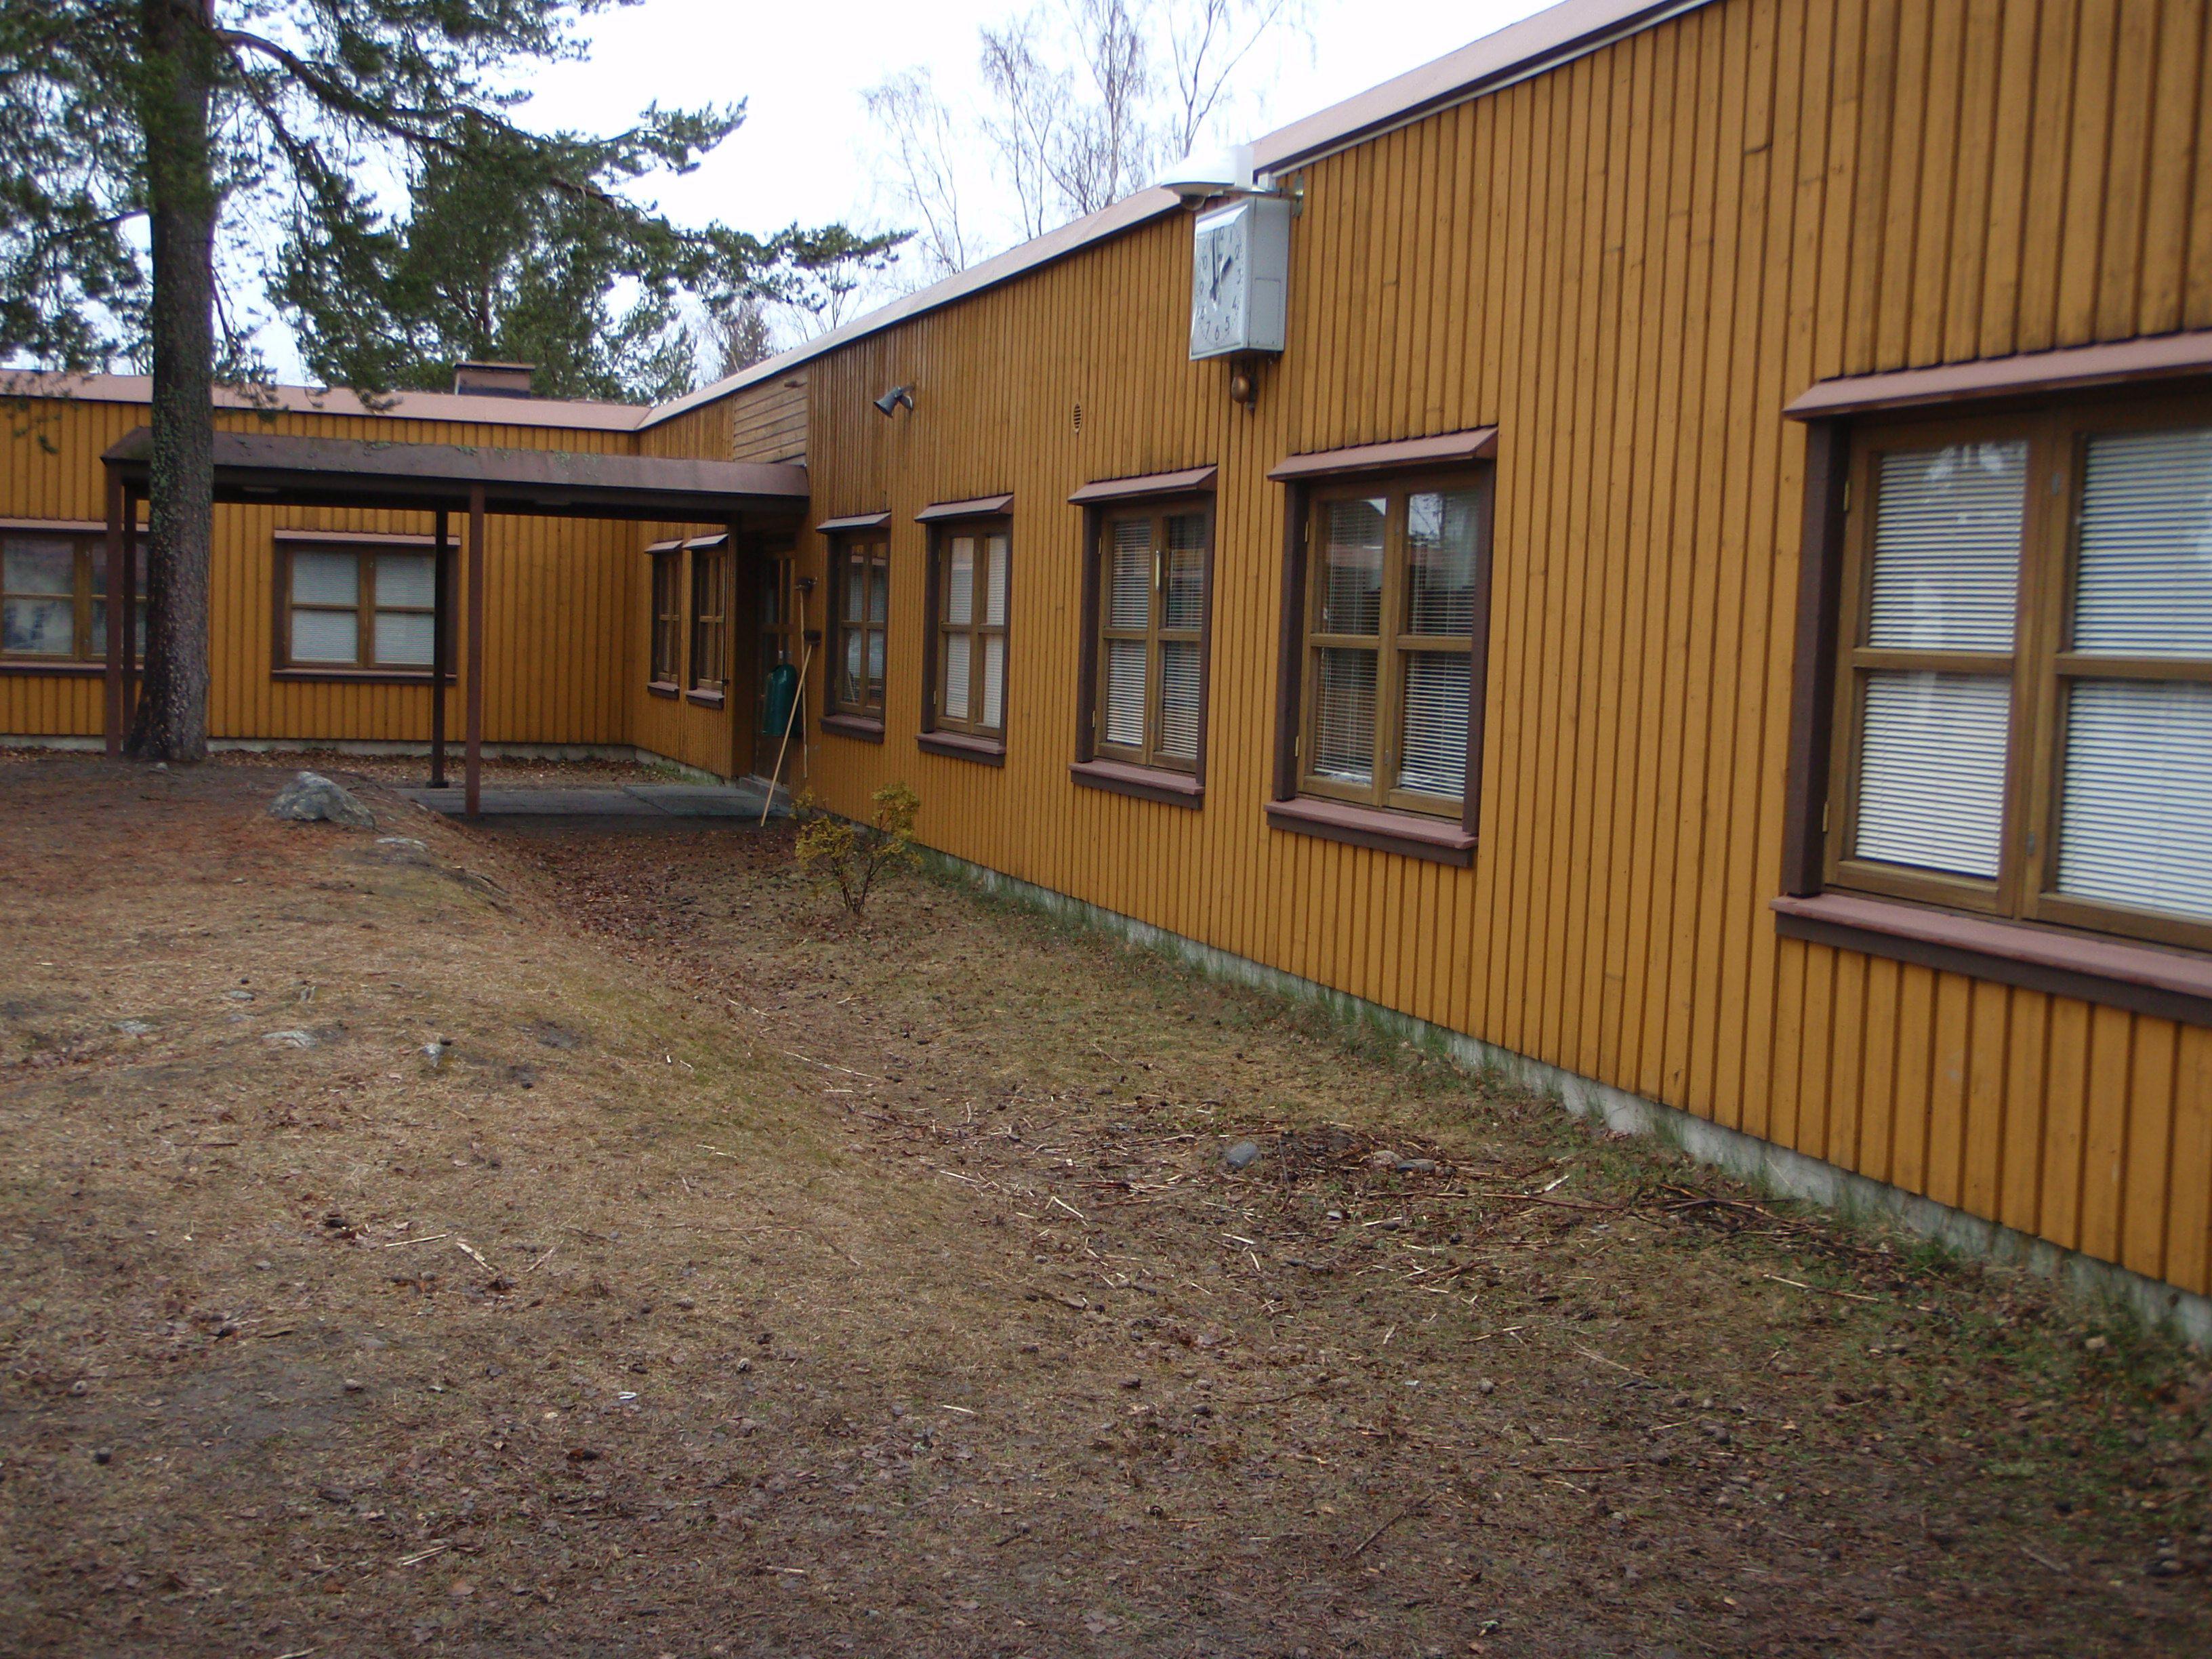 Kaskisten koulu, 1978. 1970-luvulla käytettiin myös paljon puuelementtirakenteisia ulkoseiniä.